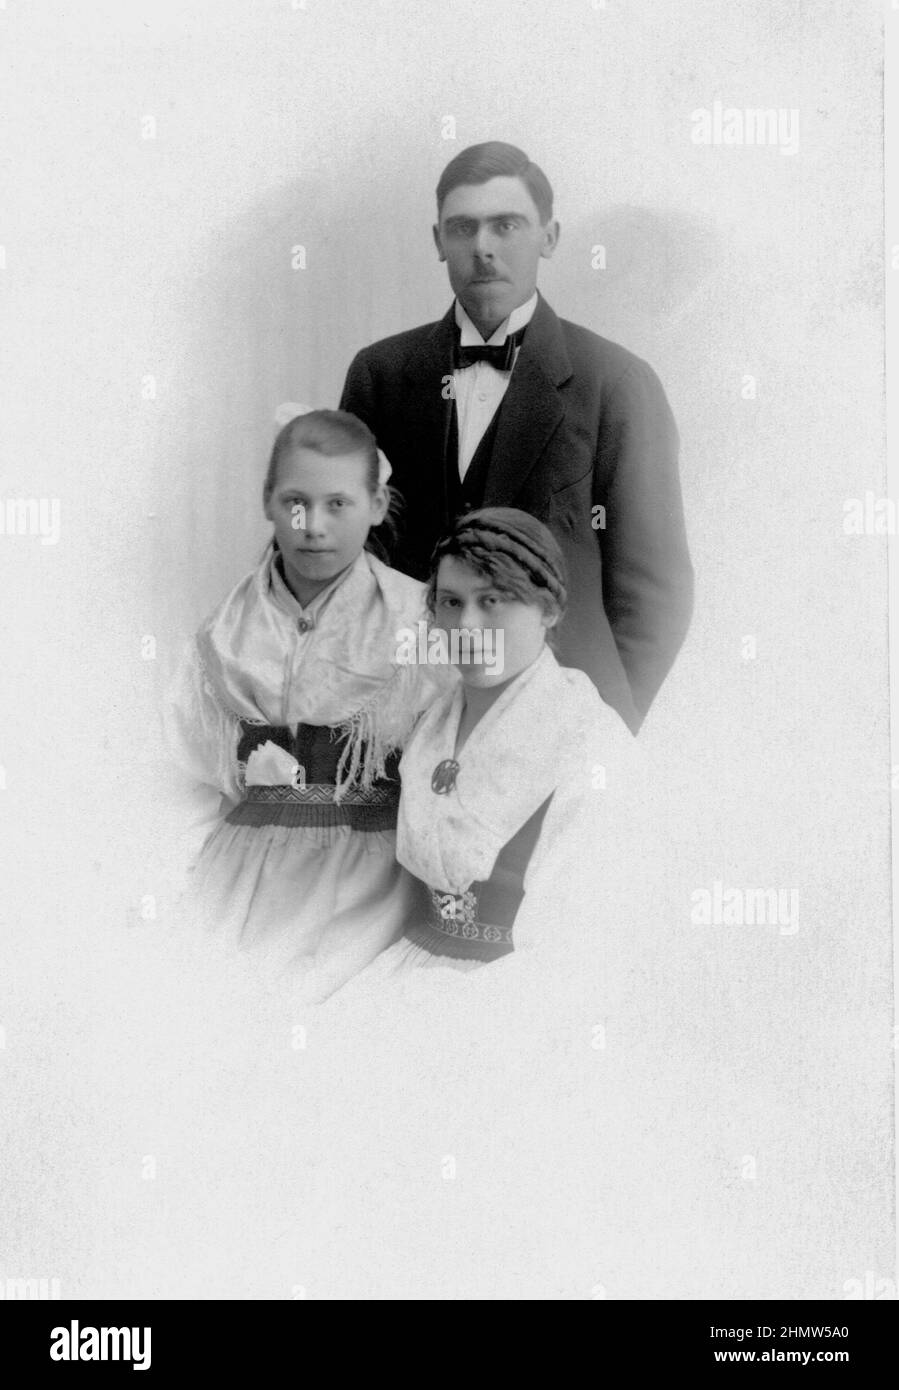 20th siècle authentique photo vintage de jeune homme en costume et noeud papillon et deux jeunes femmes en costume traditionnel, Suède Banque D'Images